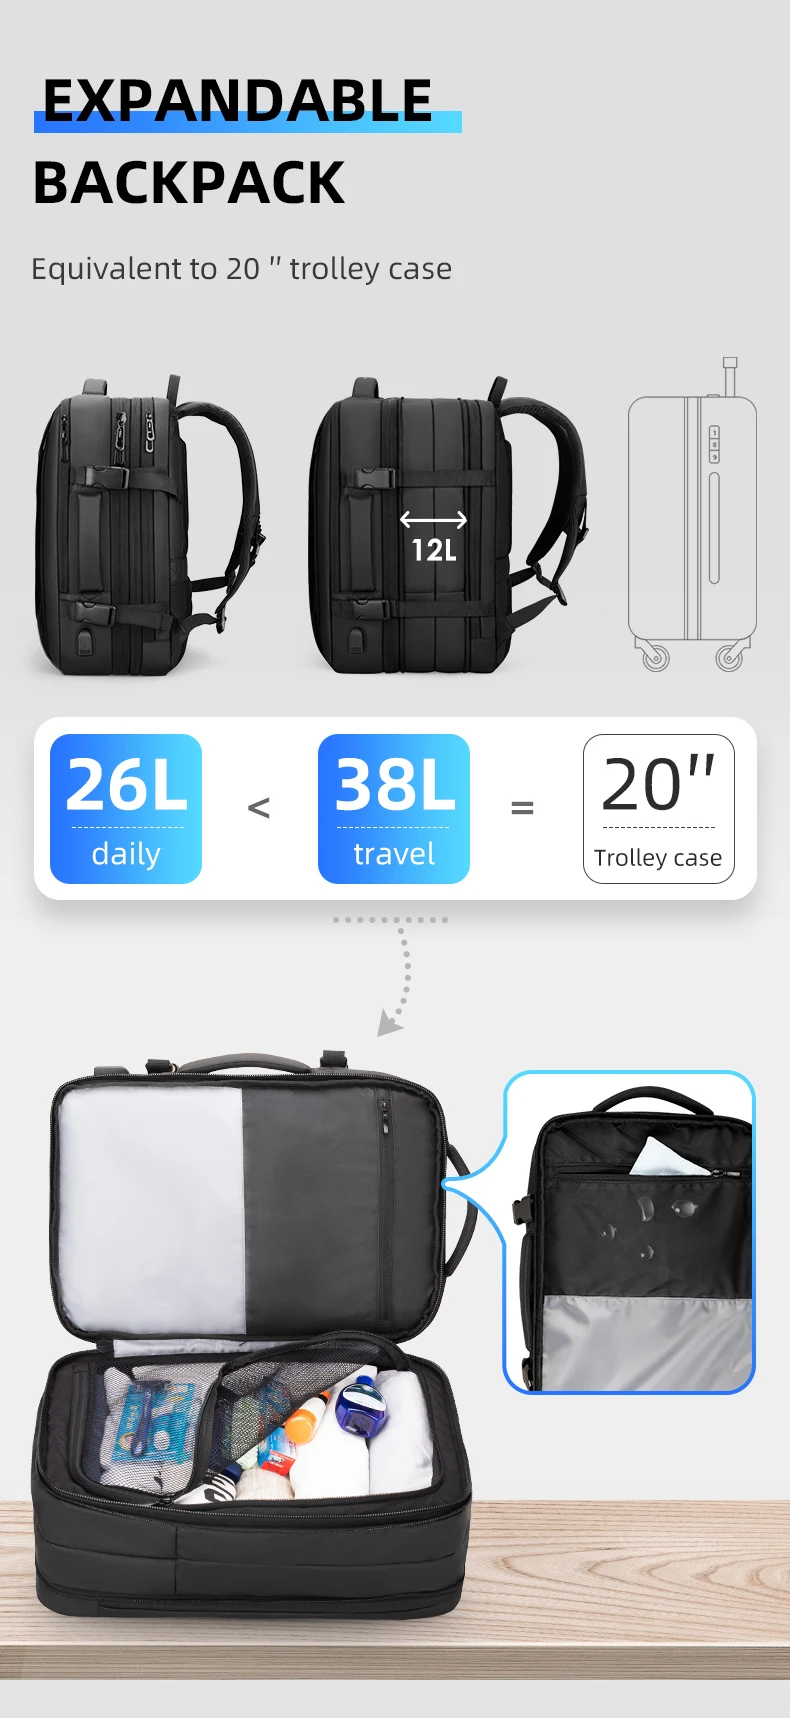 Mark Ryden, мужской рюкзак для путешествий с защитой от воровства, 17 дюймов, рюкзак для ноутбука, деловой плащ, мужская сумка, зарядка через usb, многослойное пространство